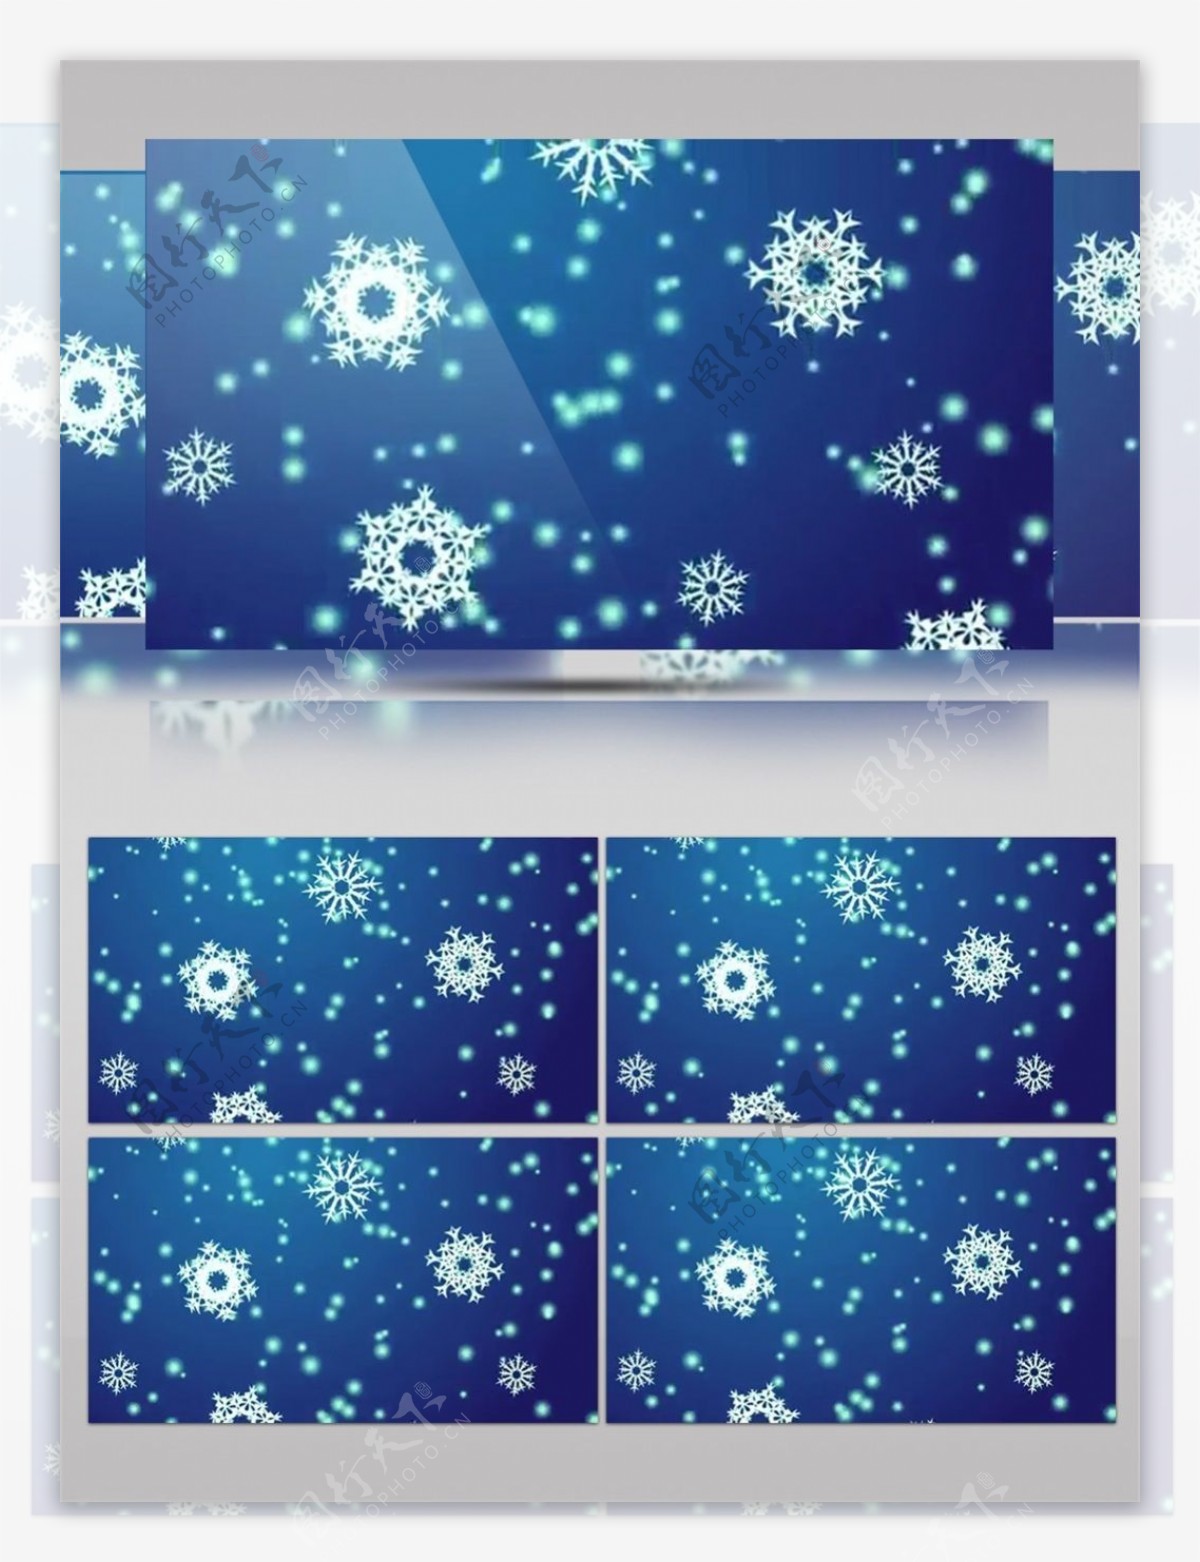 蓝色雪花背景圣诞节视频素材